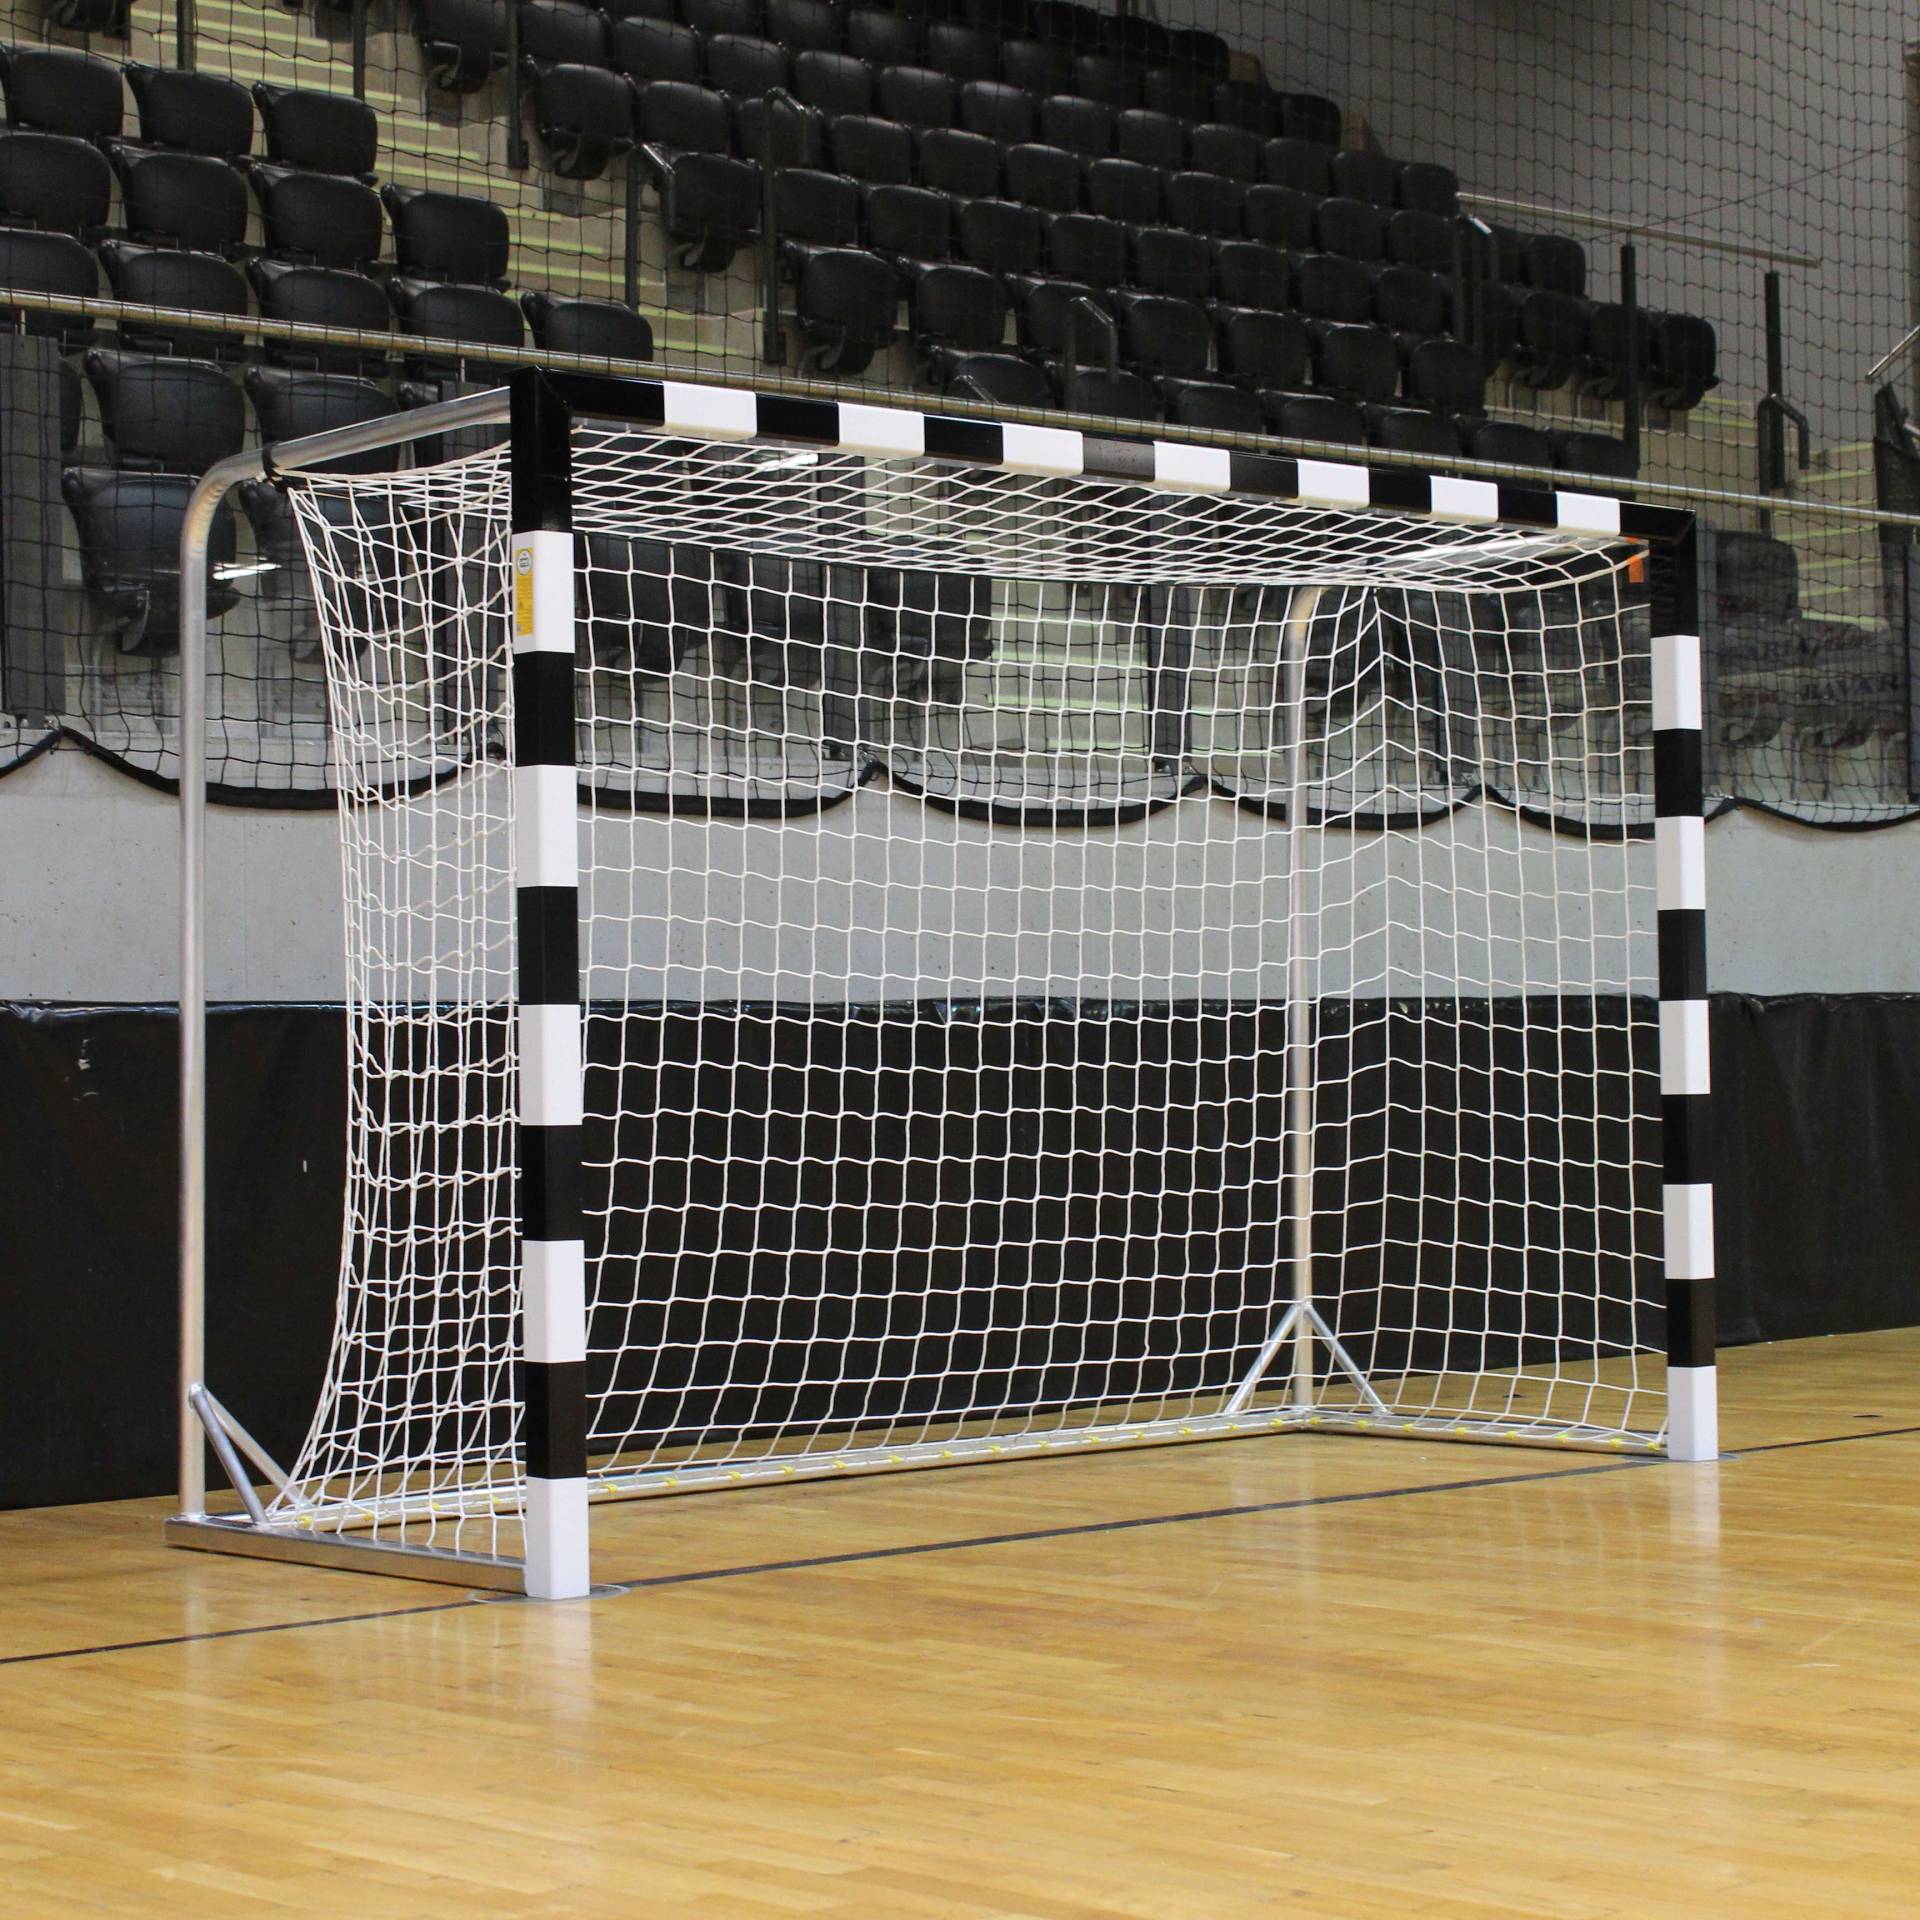 Handballtor mit beklebtem Torrahmen, Schwarz-Weiß, Mit fest stehenden Netzbügeln